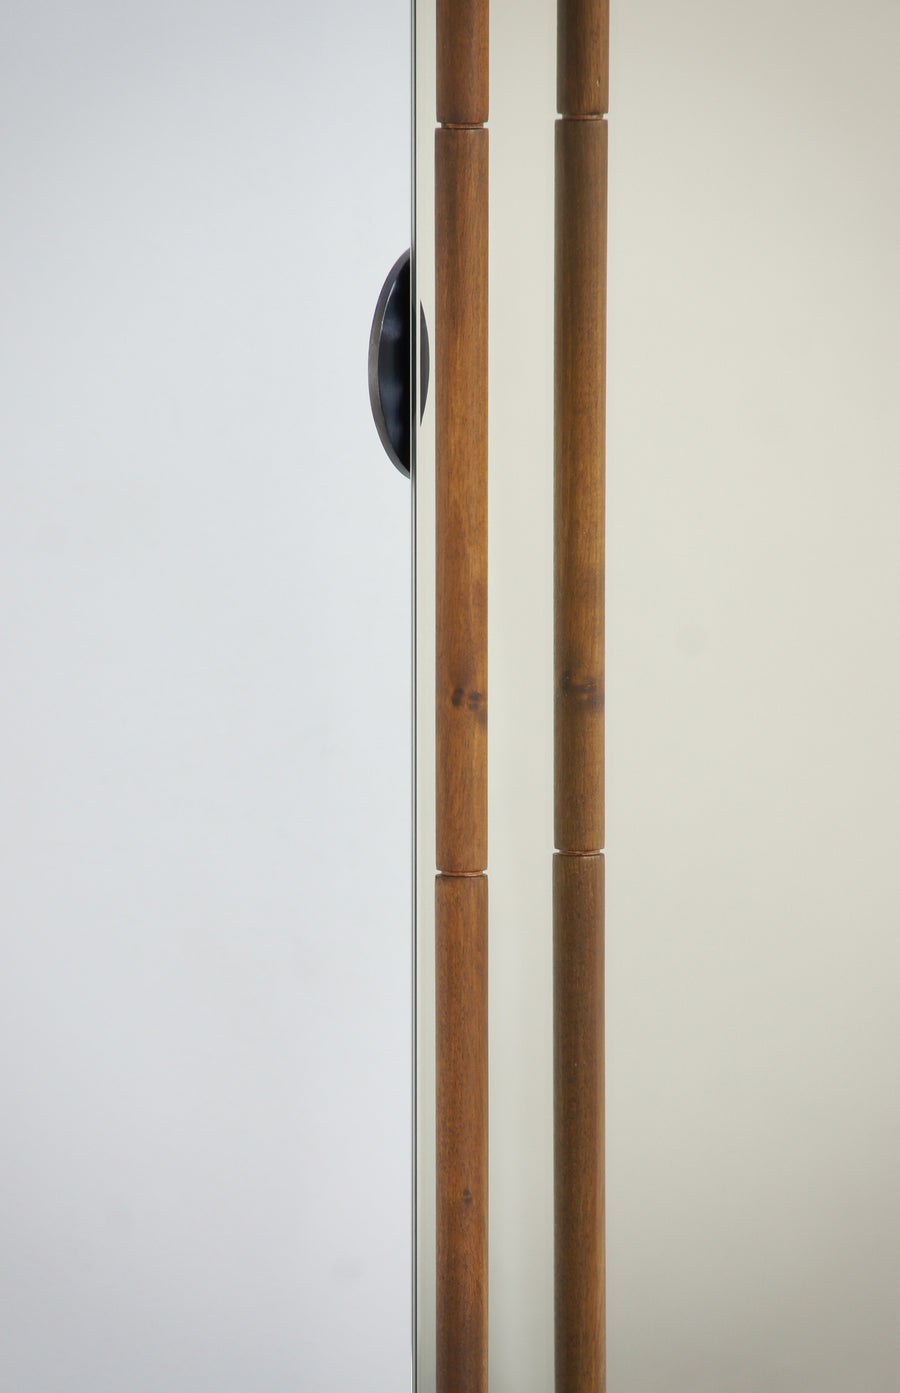 ASAS Self-Standing Castored Floor Mirror by Jaume Tresserra for Dessie - DUPLEX DESIGN